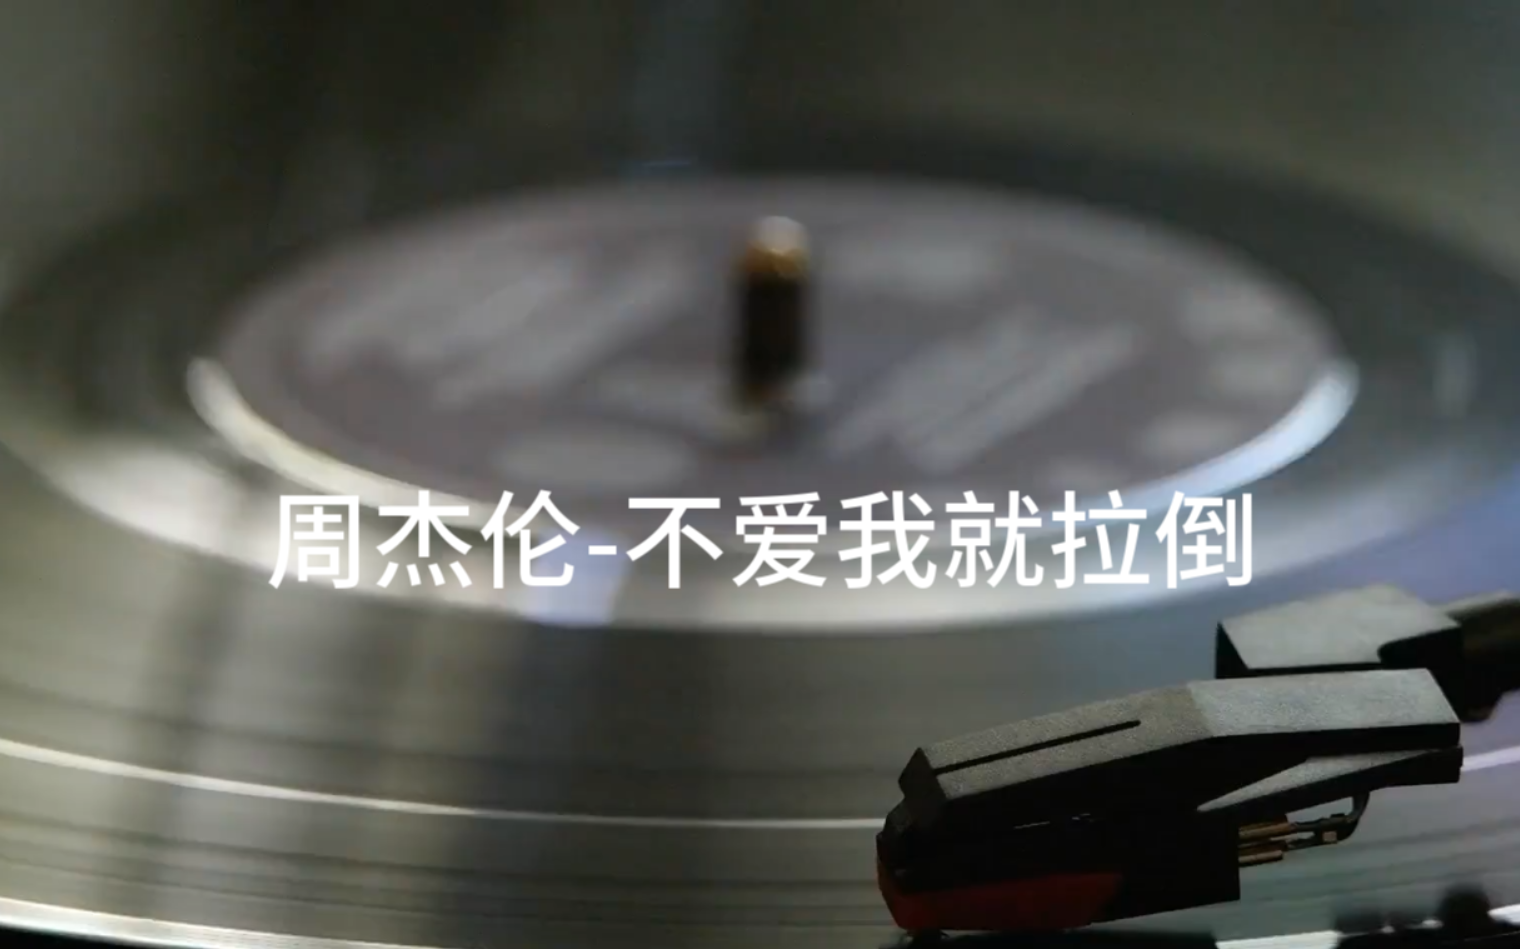 【8K/4K】周杰伦《最伟大的作品》专辑歌曲《不爱我就拉倒》MV 修复版 - 哔哩哔哩